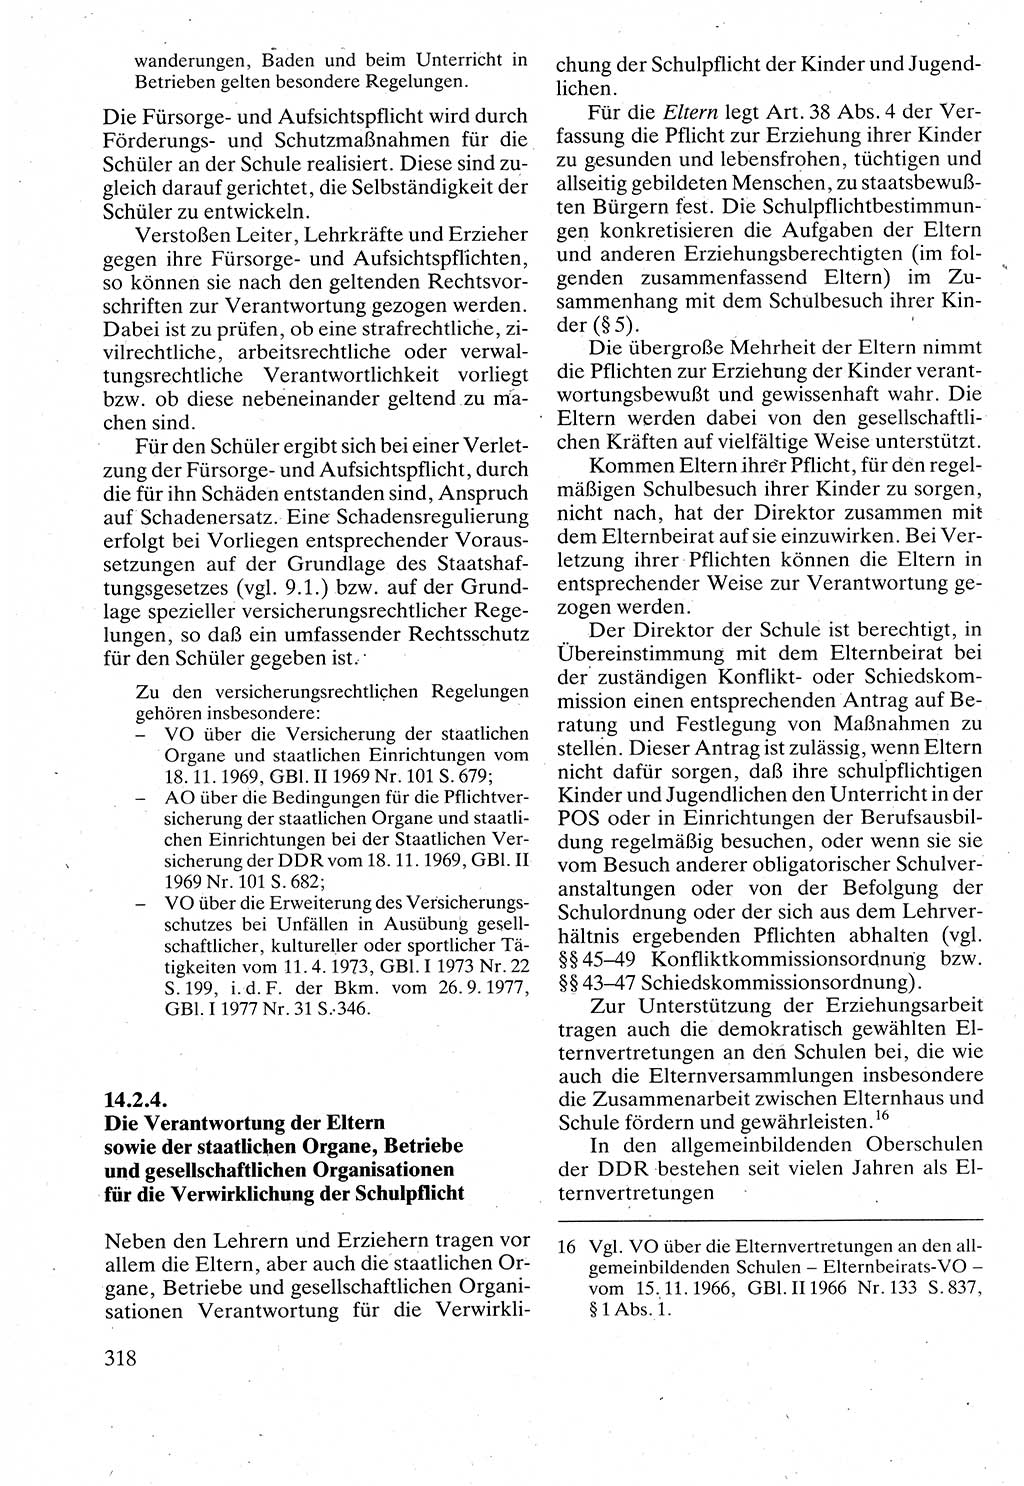 Verwaltungsrecht [Deutsche Demokratische Republik (DDR)], Lehrbuch 1988, Seite 318 (Verw.-R. DDR Lb. 1988, S. 318)